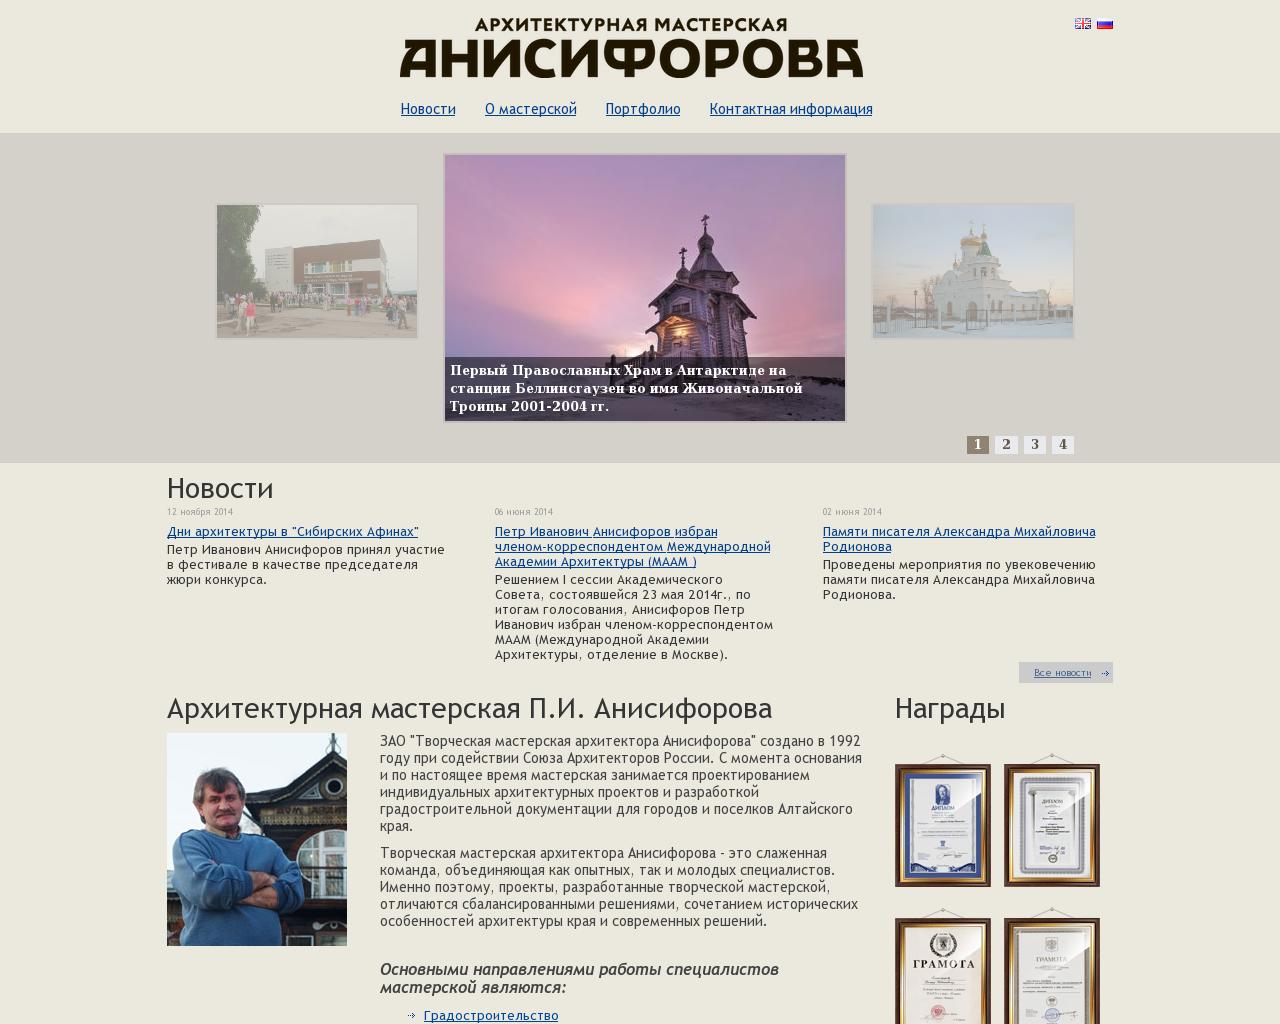 Изображение сайта altarh.ru в разрешении 1280x1024